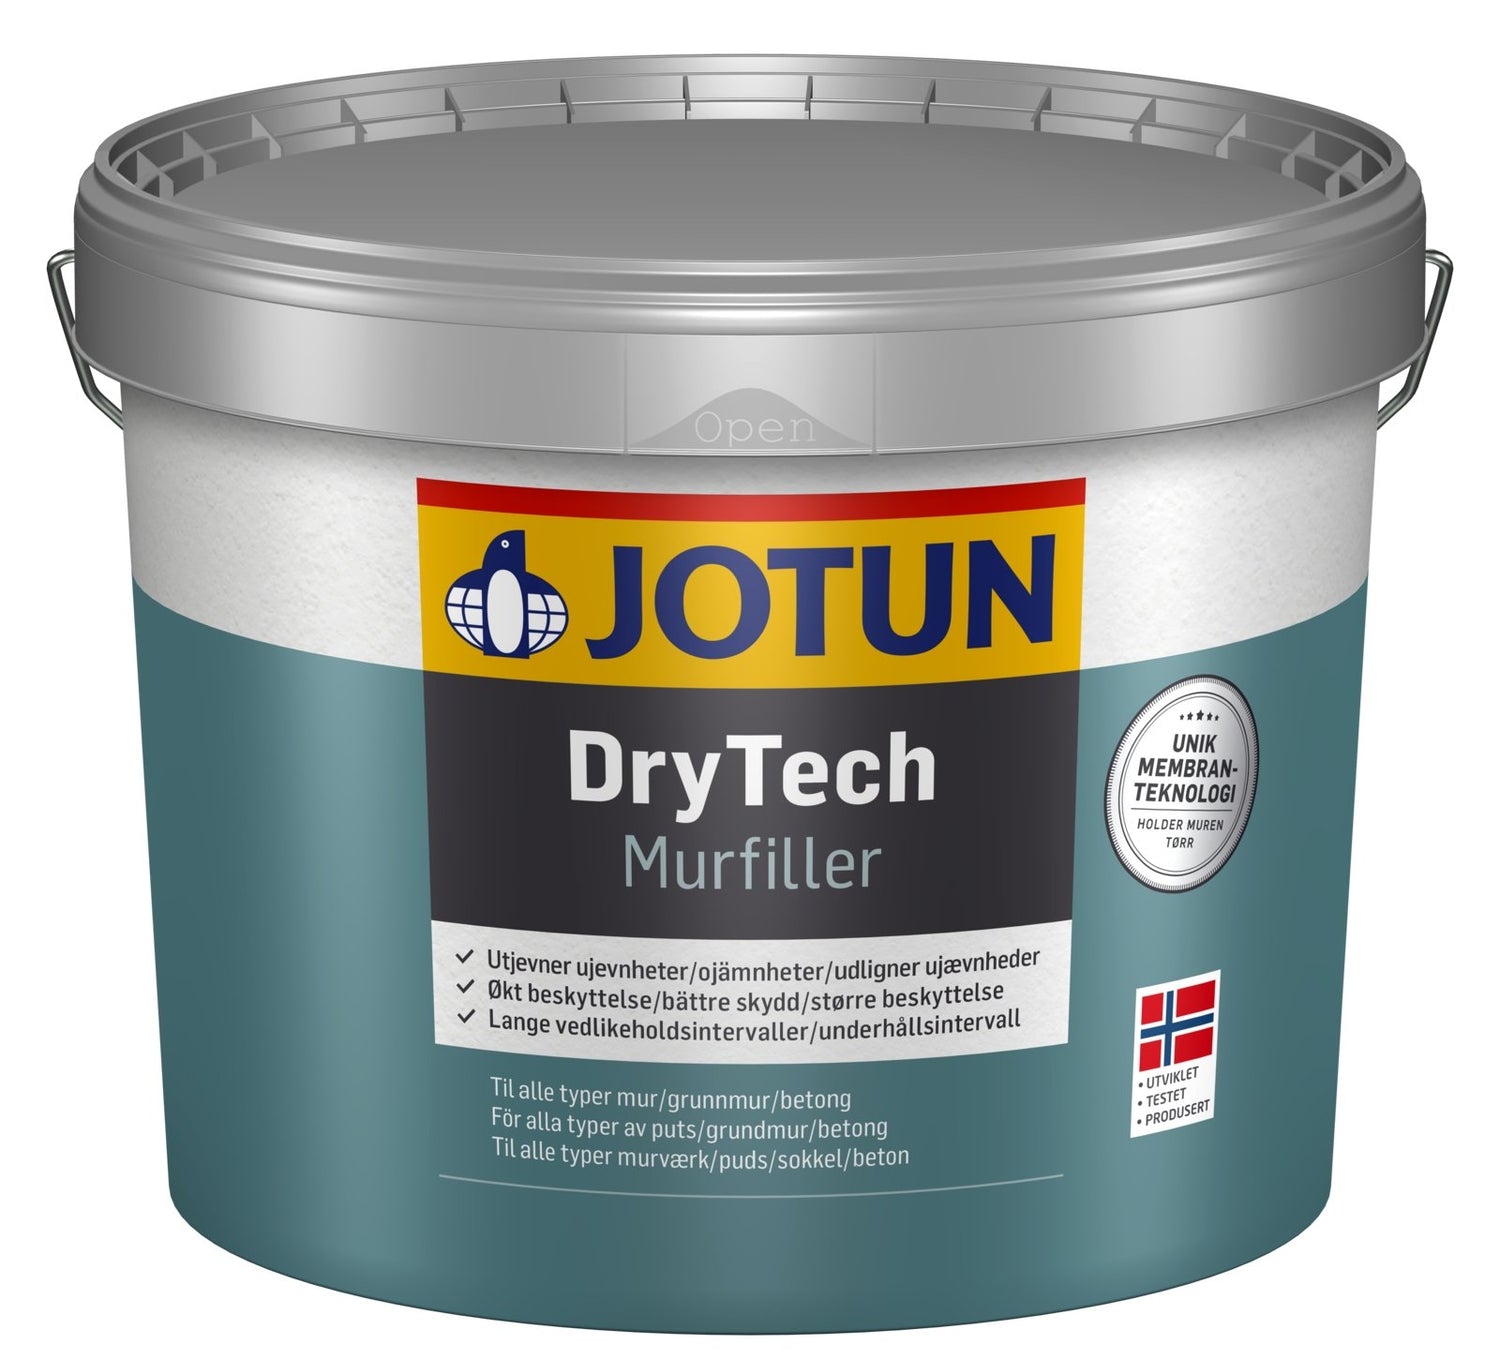 Jotun DryTech Murfiller - Malprivat.dk